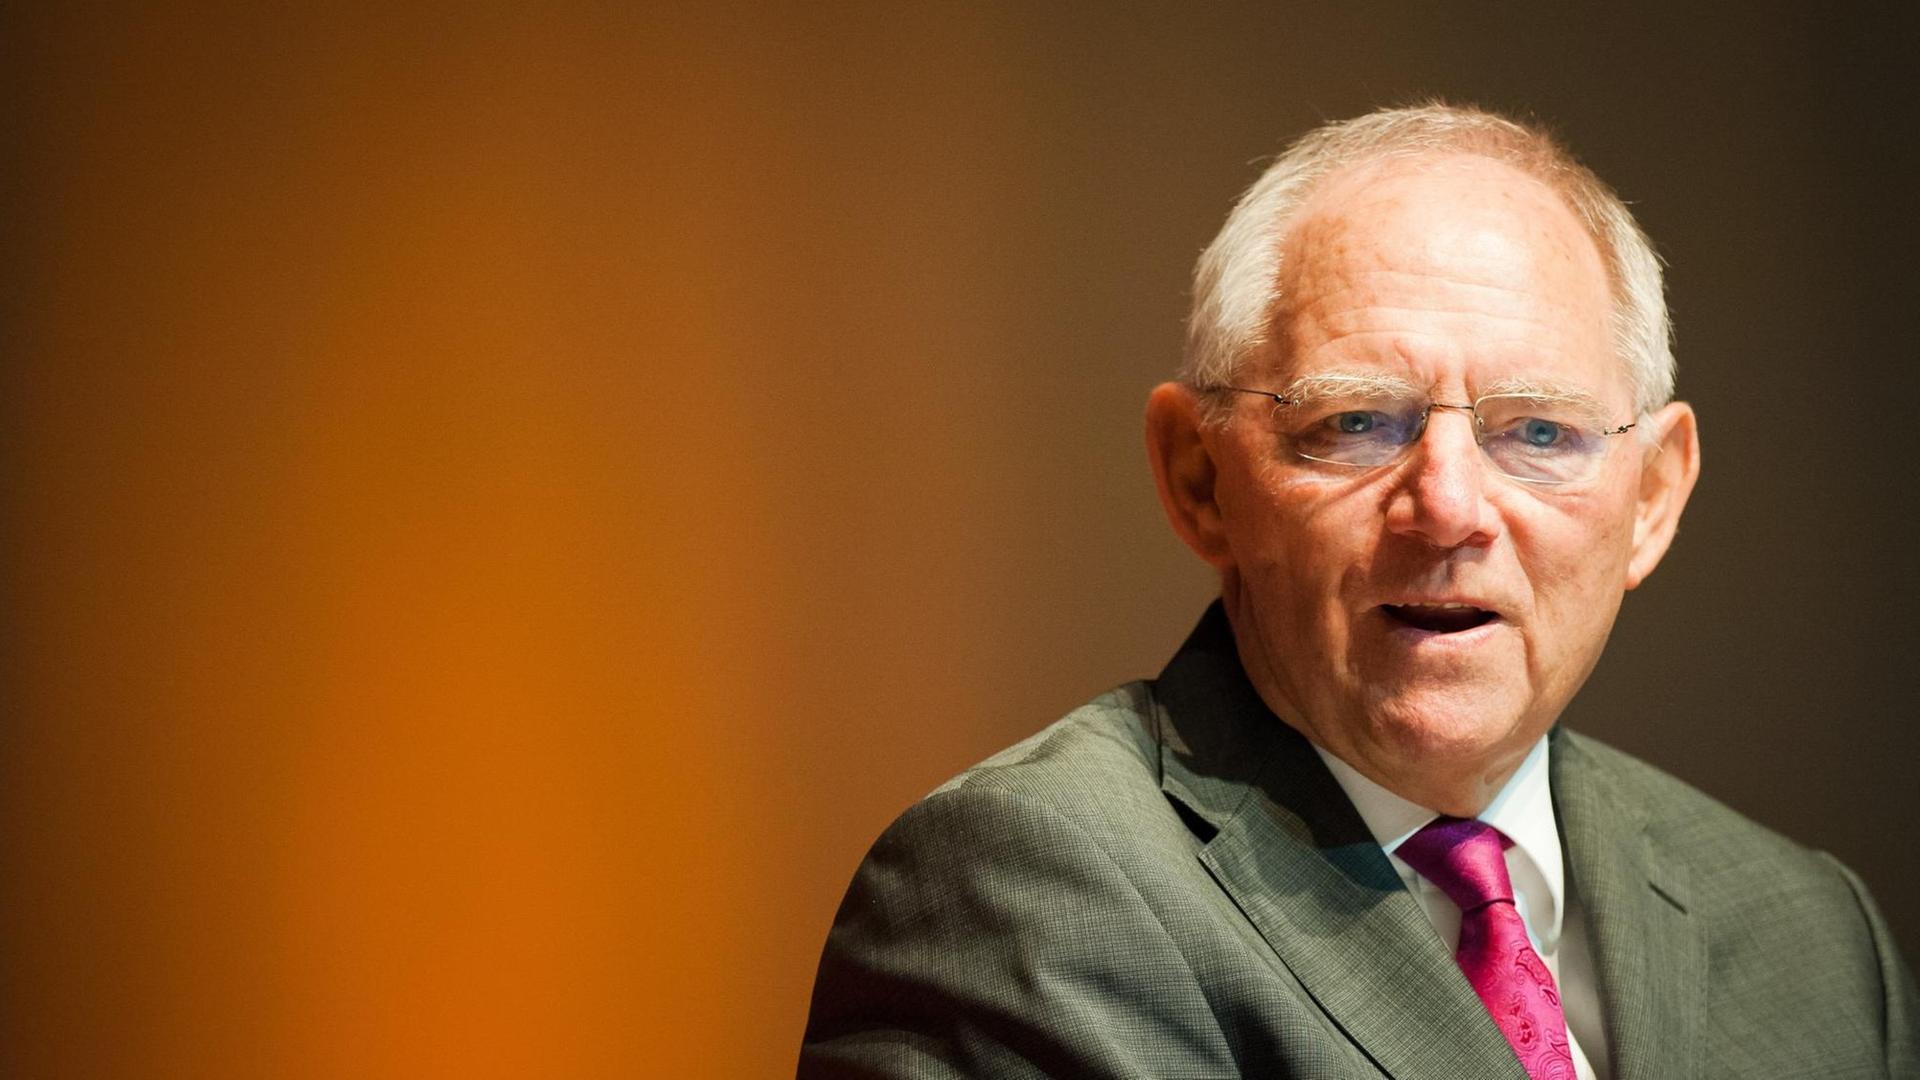 Bundesfinanzminister Wolfgang Schäuble (CDU) spricht am 25.03.2017 bei der Landesvertreterversammlung der CDU Baden-Württemberg in der Stadthalle in Sindelfingen (Baden-Württemberg) zu Parteimitgliedern.